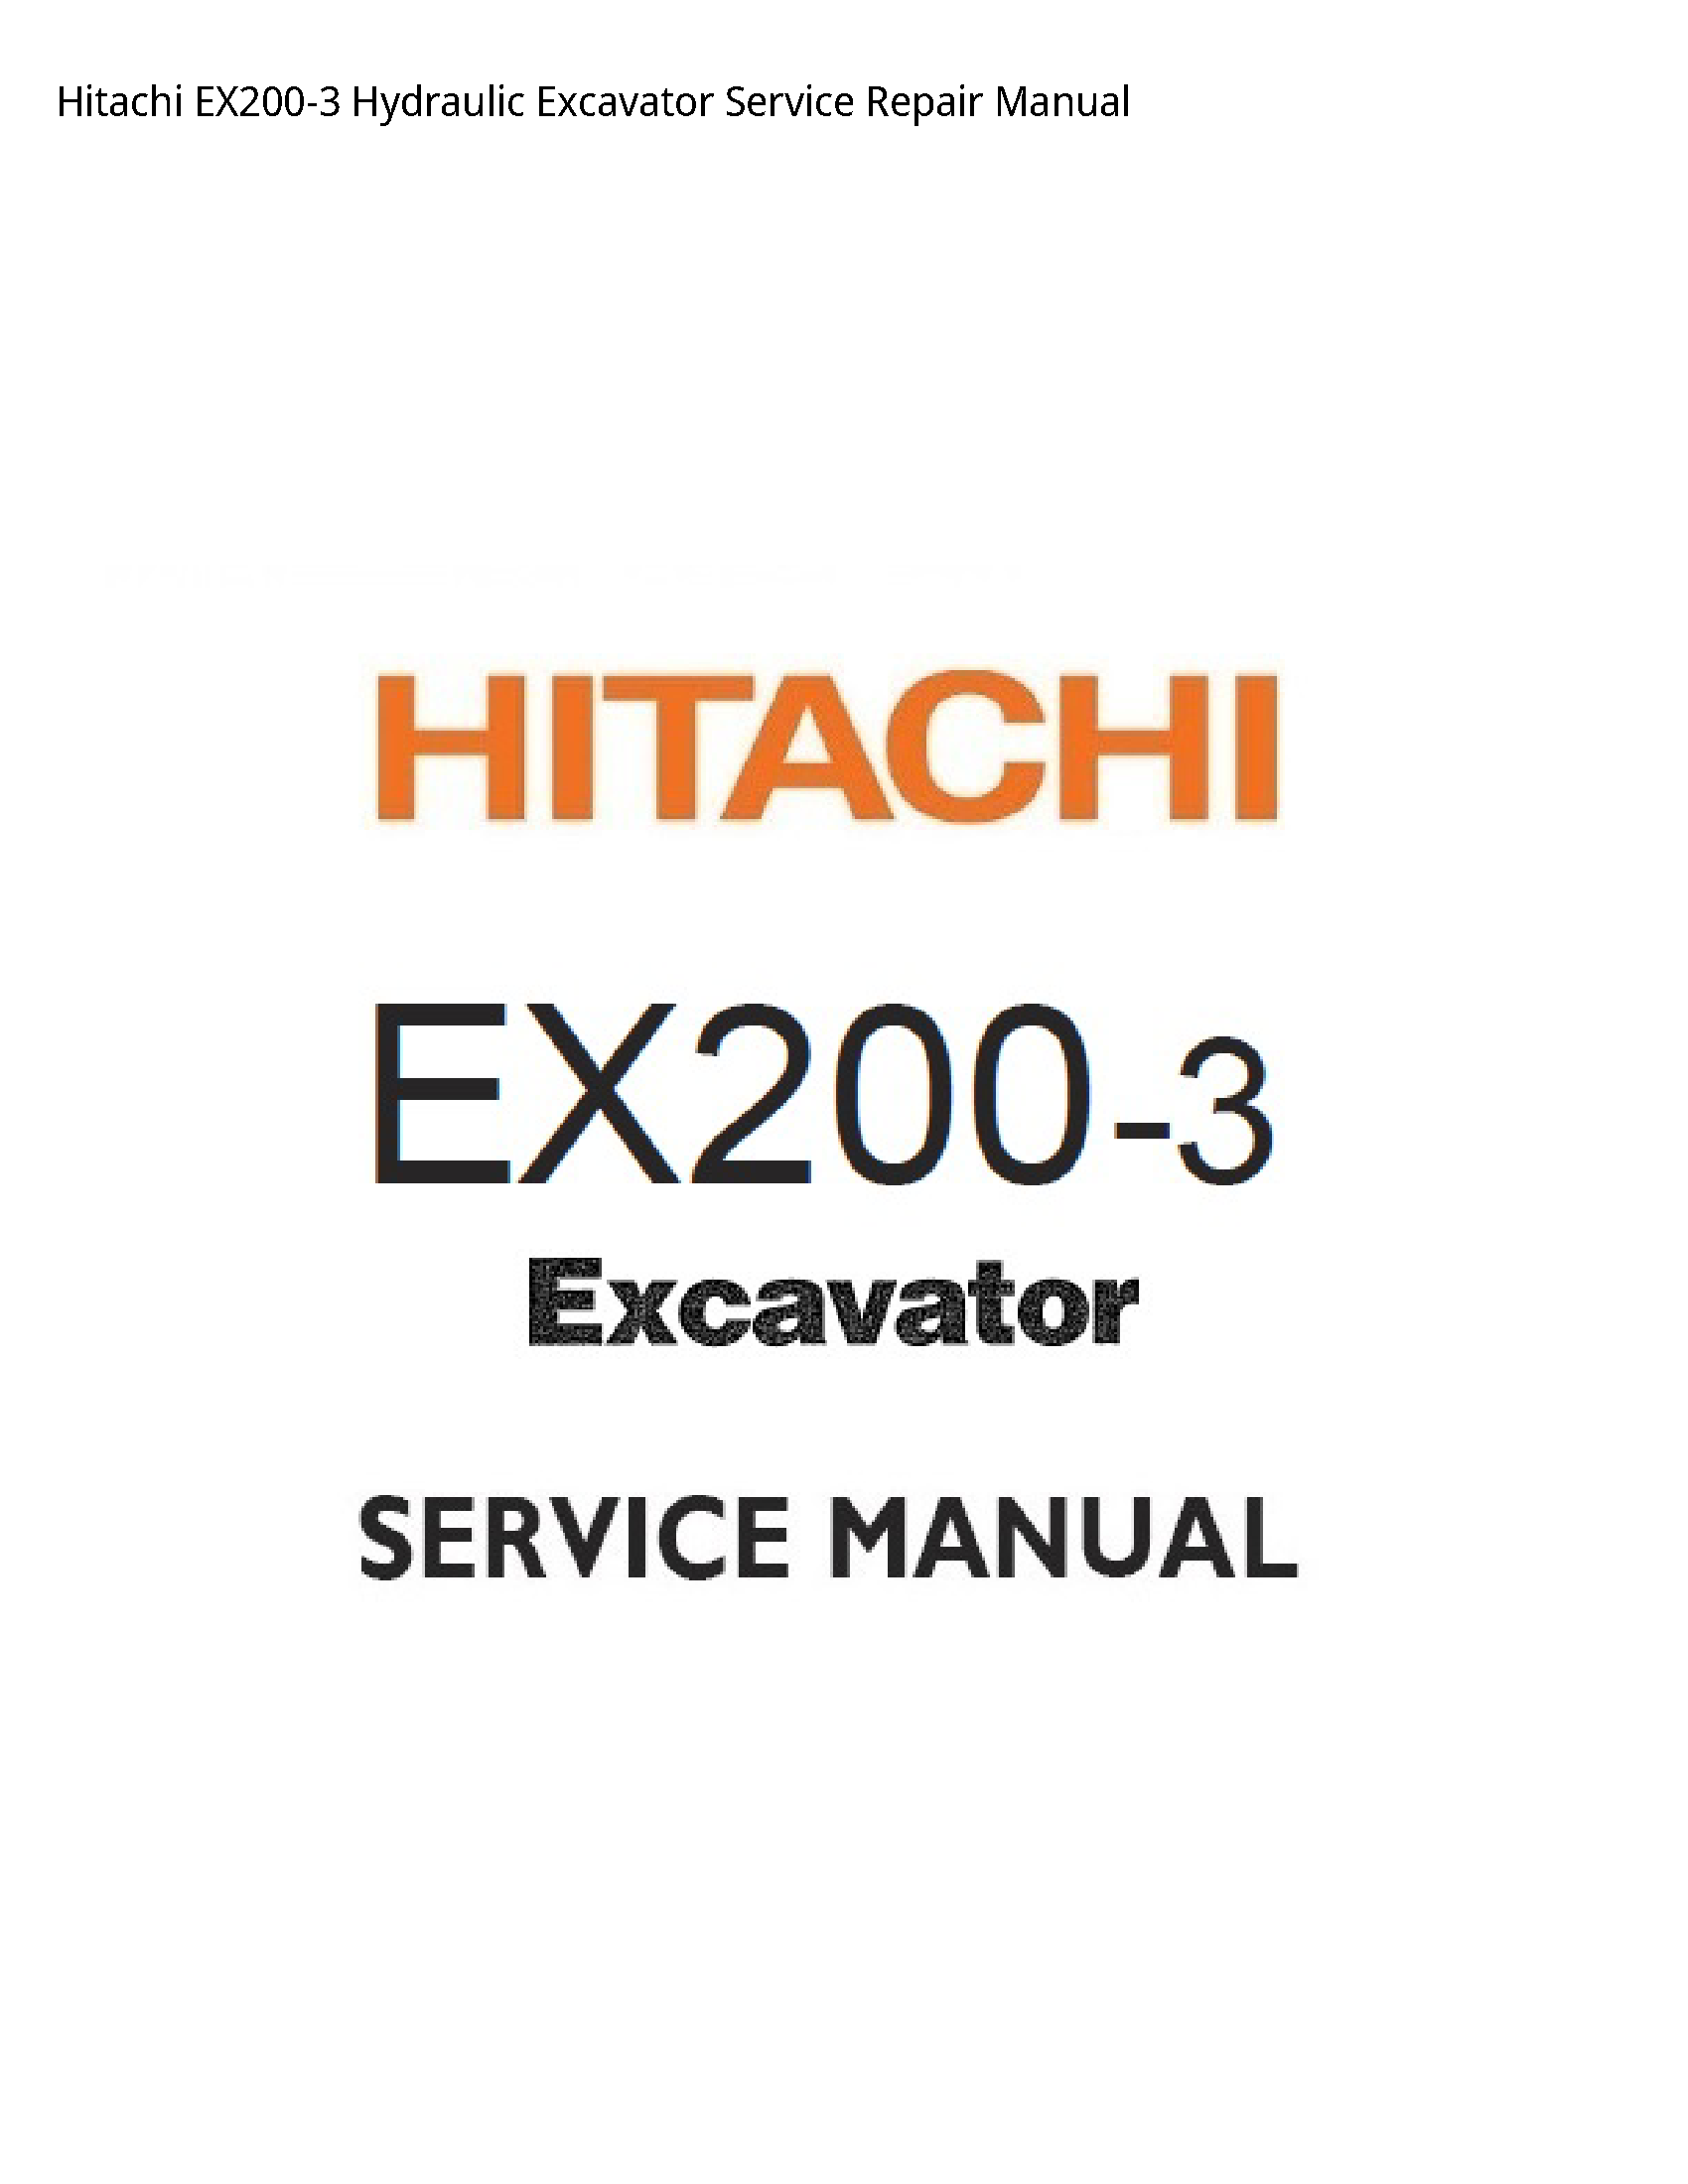 Hitachi EX200-3 Hydraulic Excavator manual